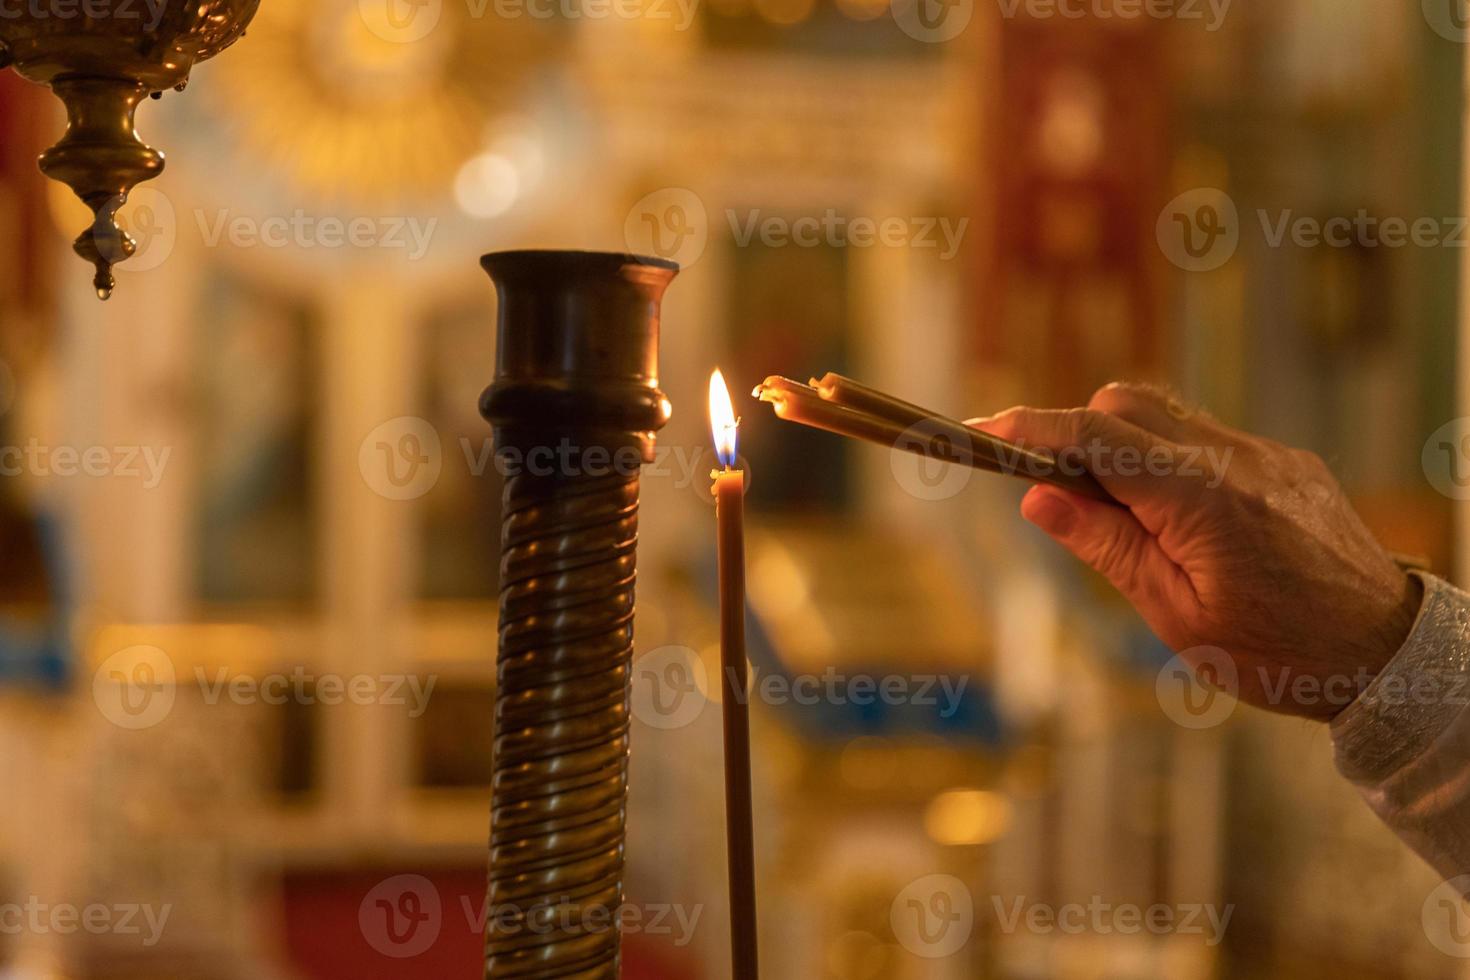 église orthodoxe. christianisme. main de prêtre allumant des bougies allumées dans une église orthodoxe traditionnelle la veille de pâques ou de noël. religion foi prier symbole. photo